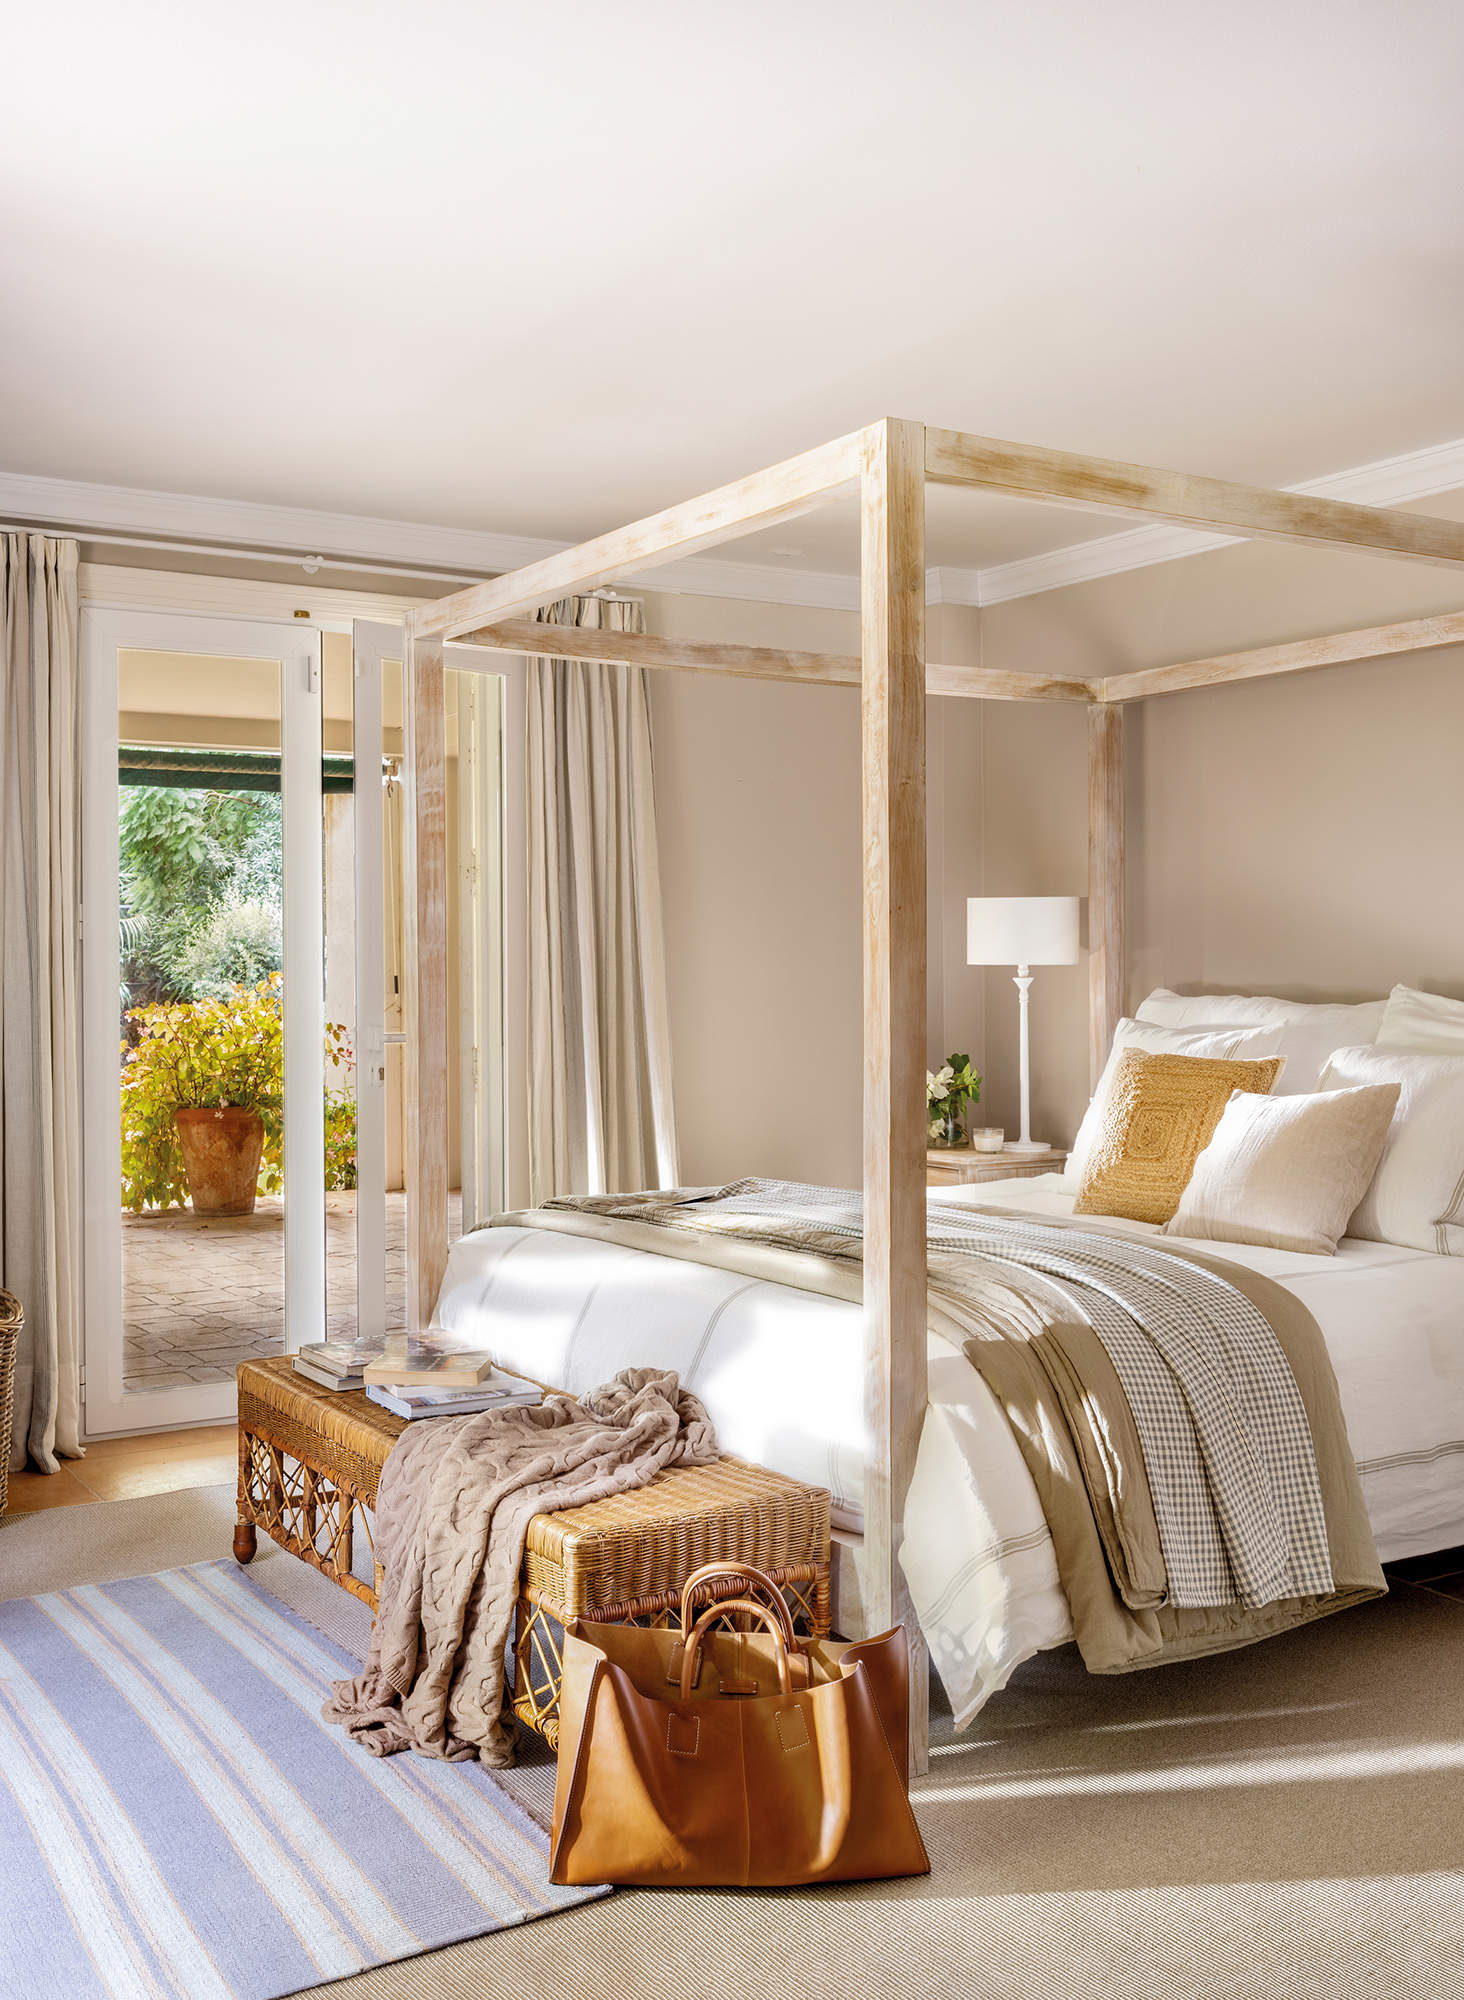 Dormitorio moderno con cama con dosel de madera.